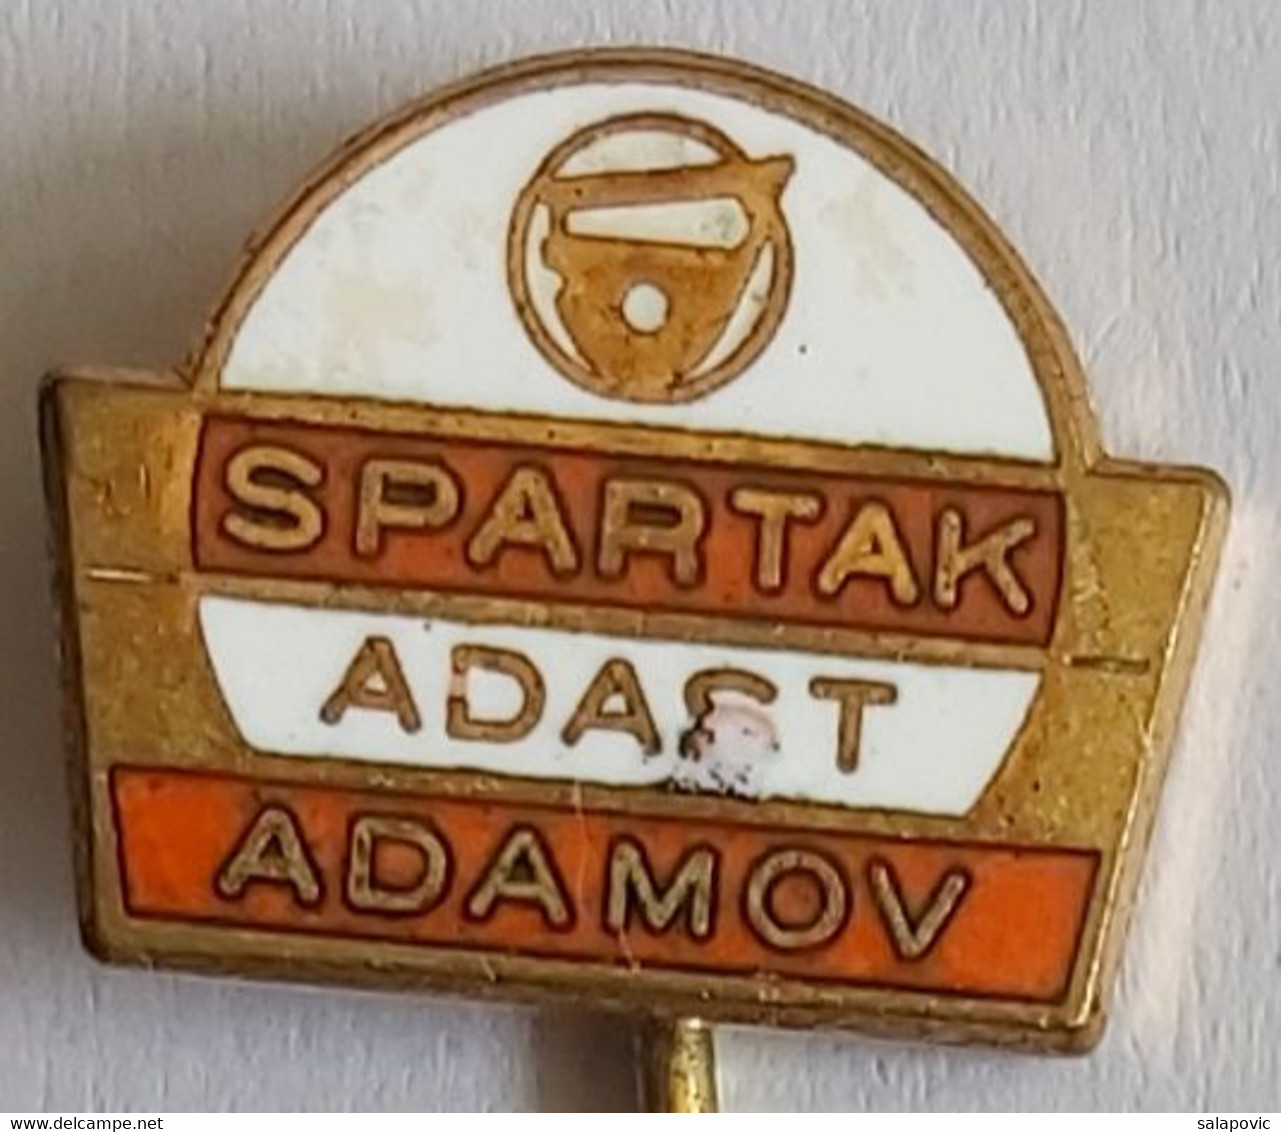 Spartak Adast Adamov Czech Republic football Soccer Club Fussball Calcio Futbol Futebol PINS BADGES A4/4 - Football